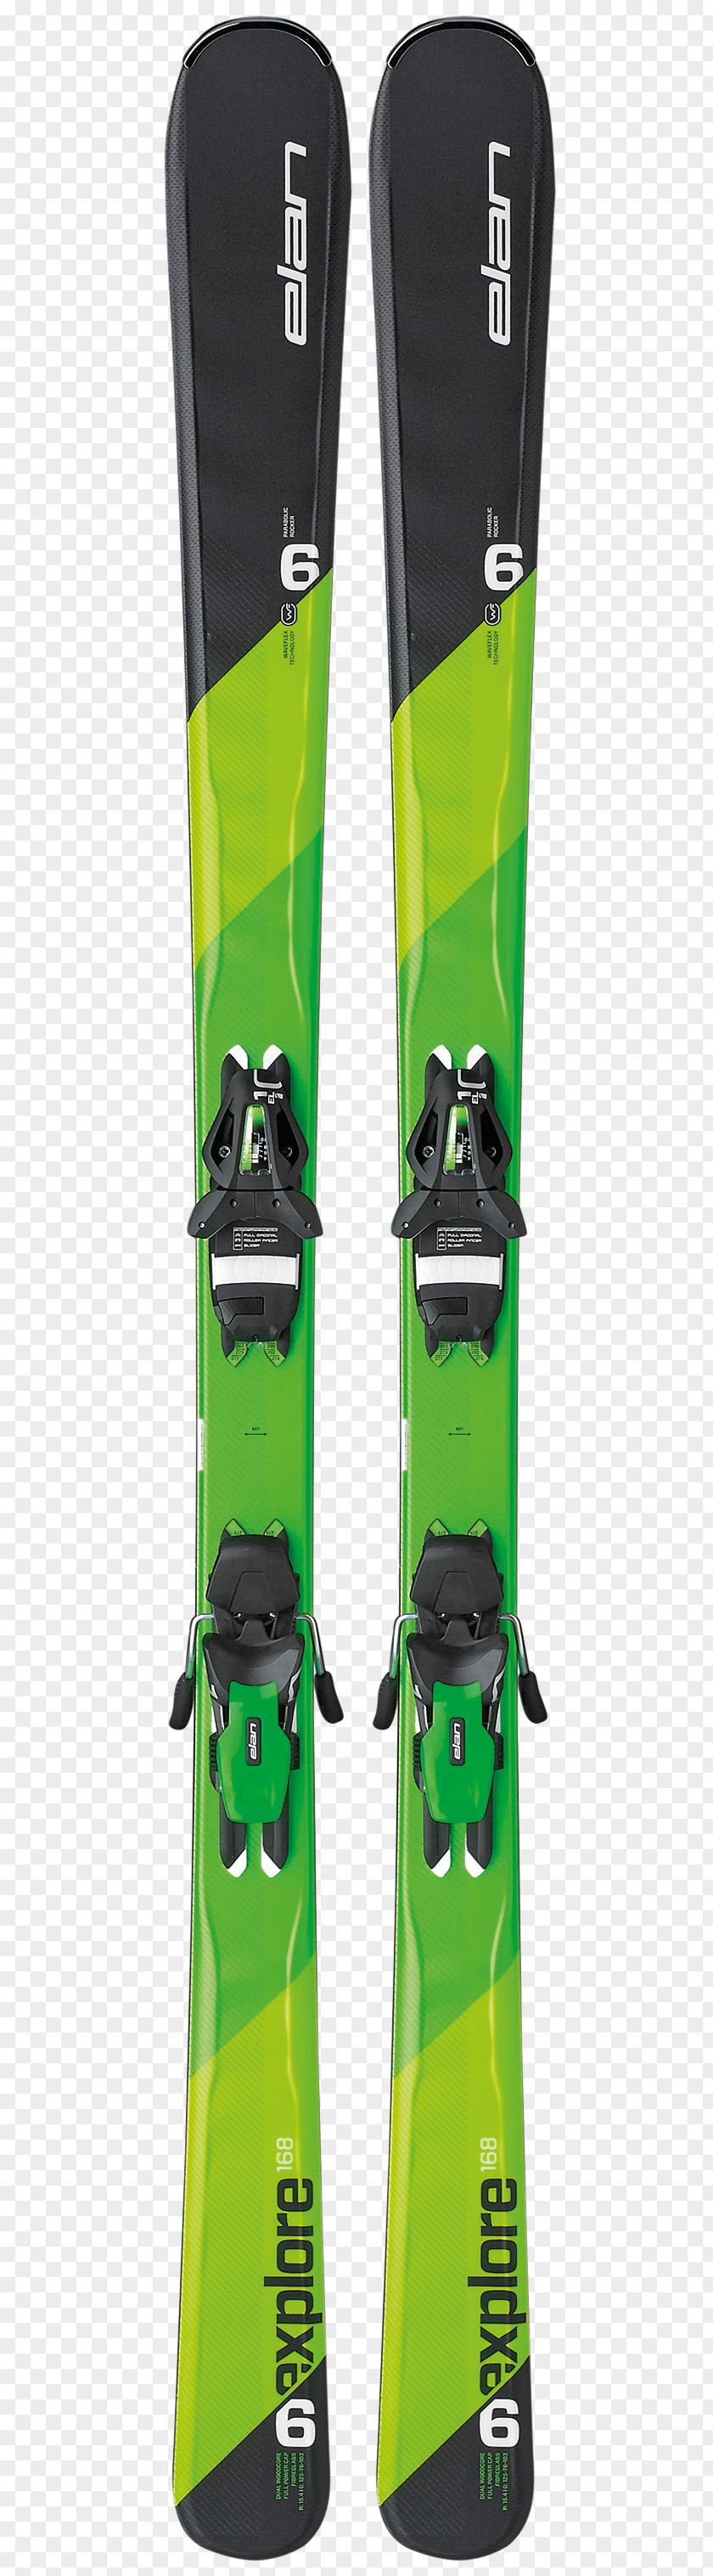 Skiing Ski Bindings Elan Alpine PNG